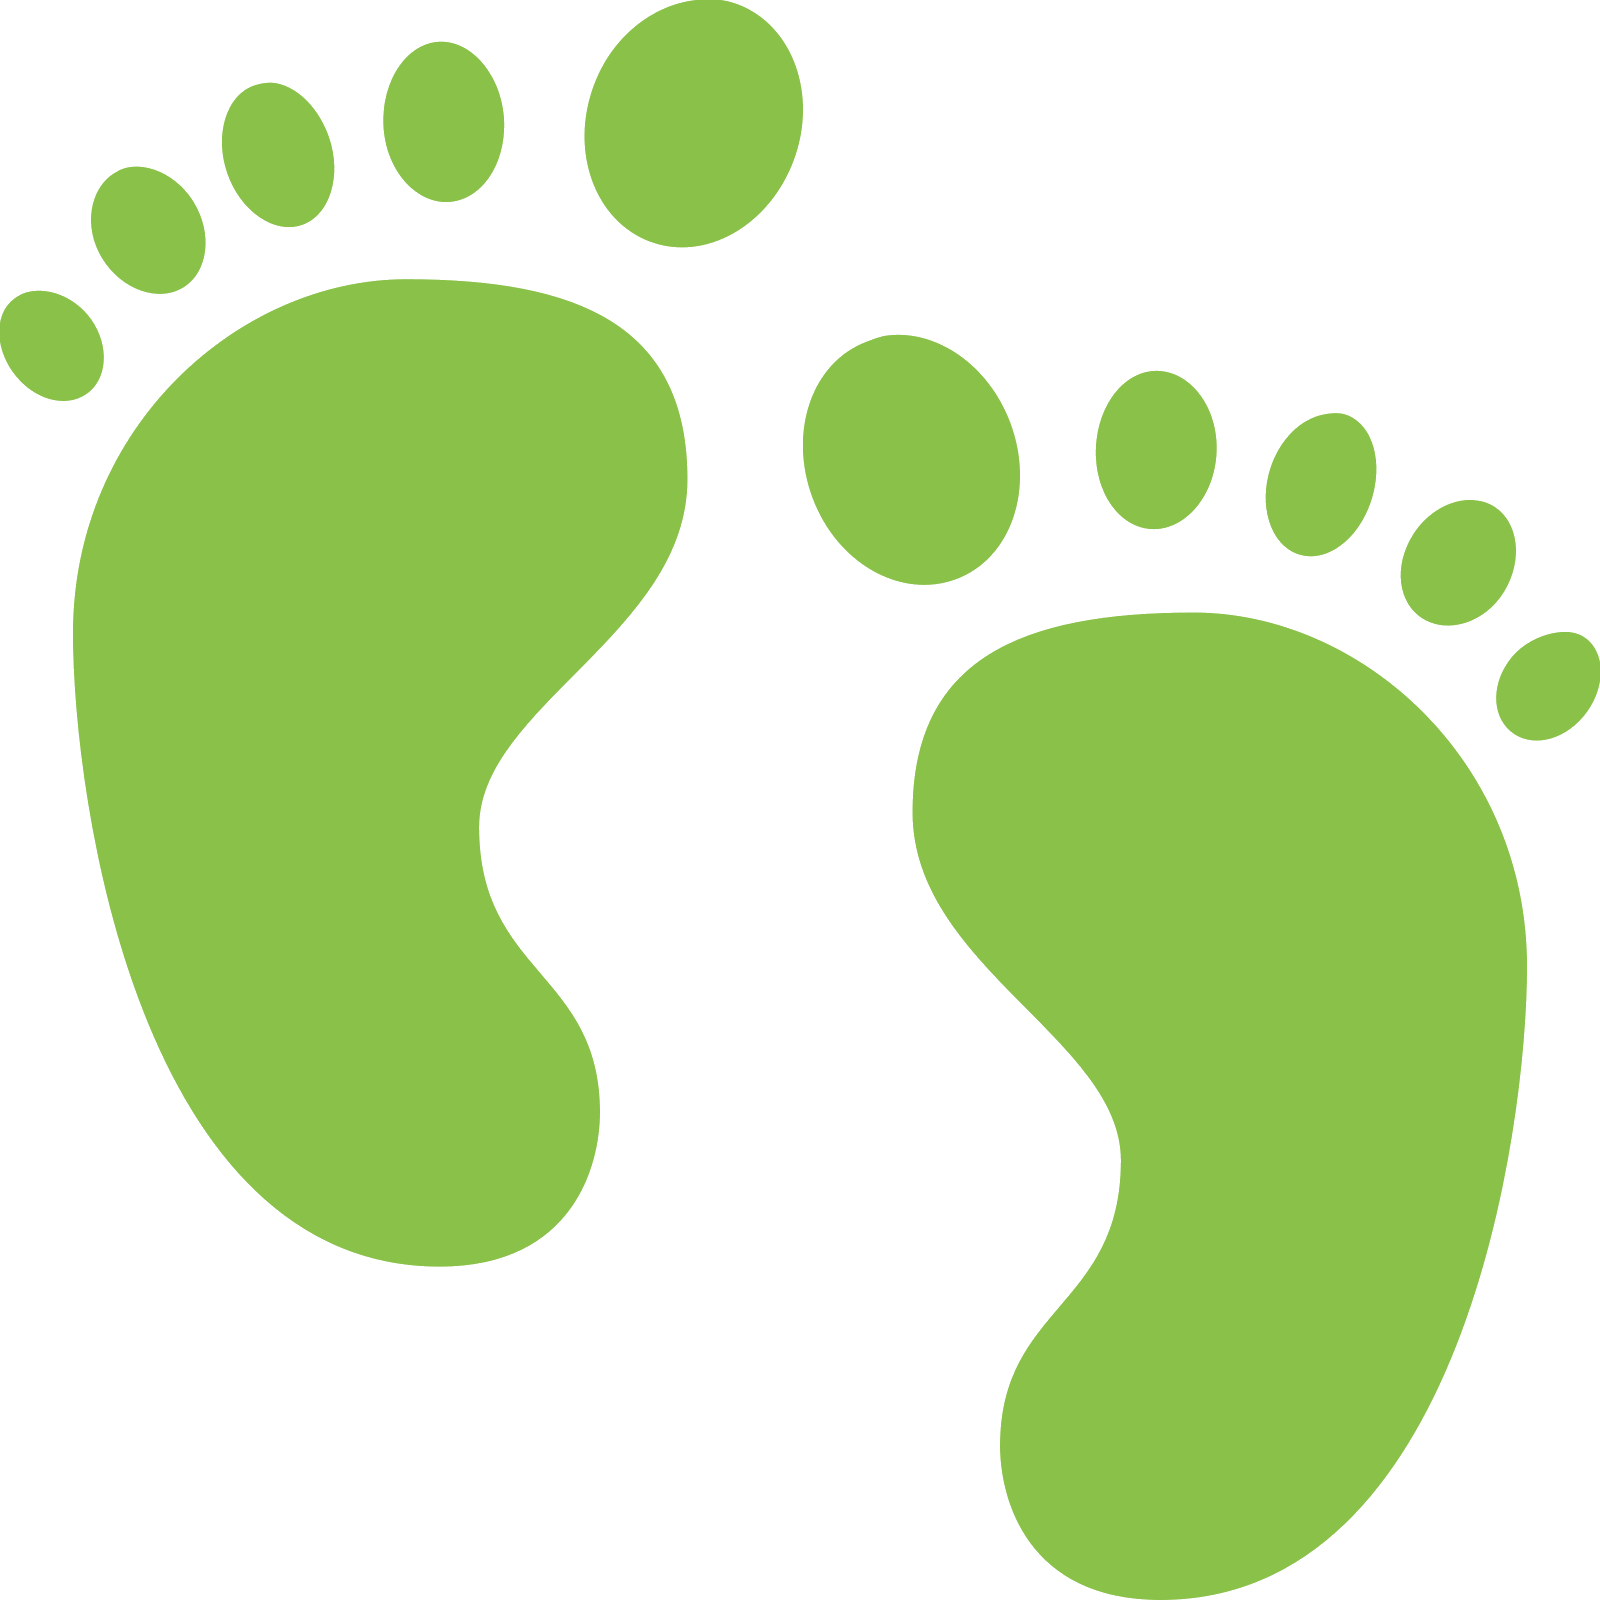 footprints clipart green footprint